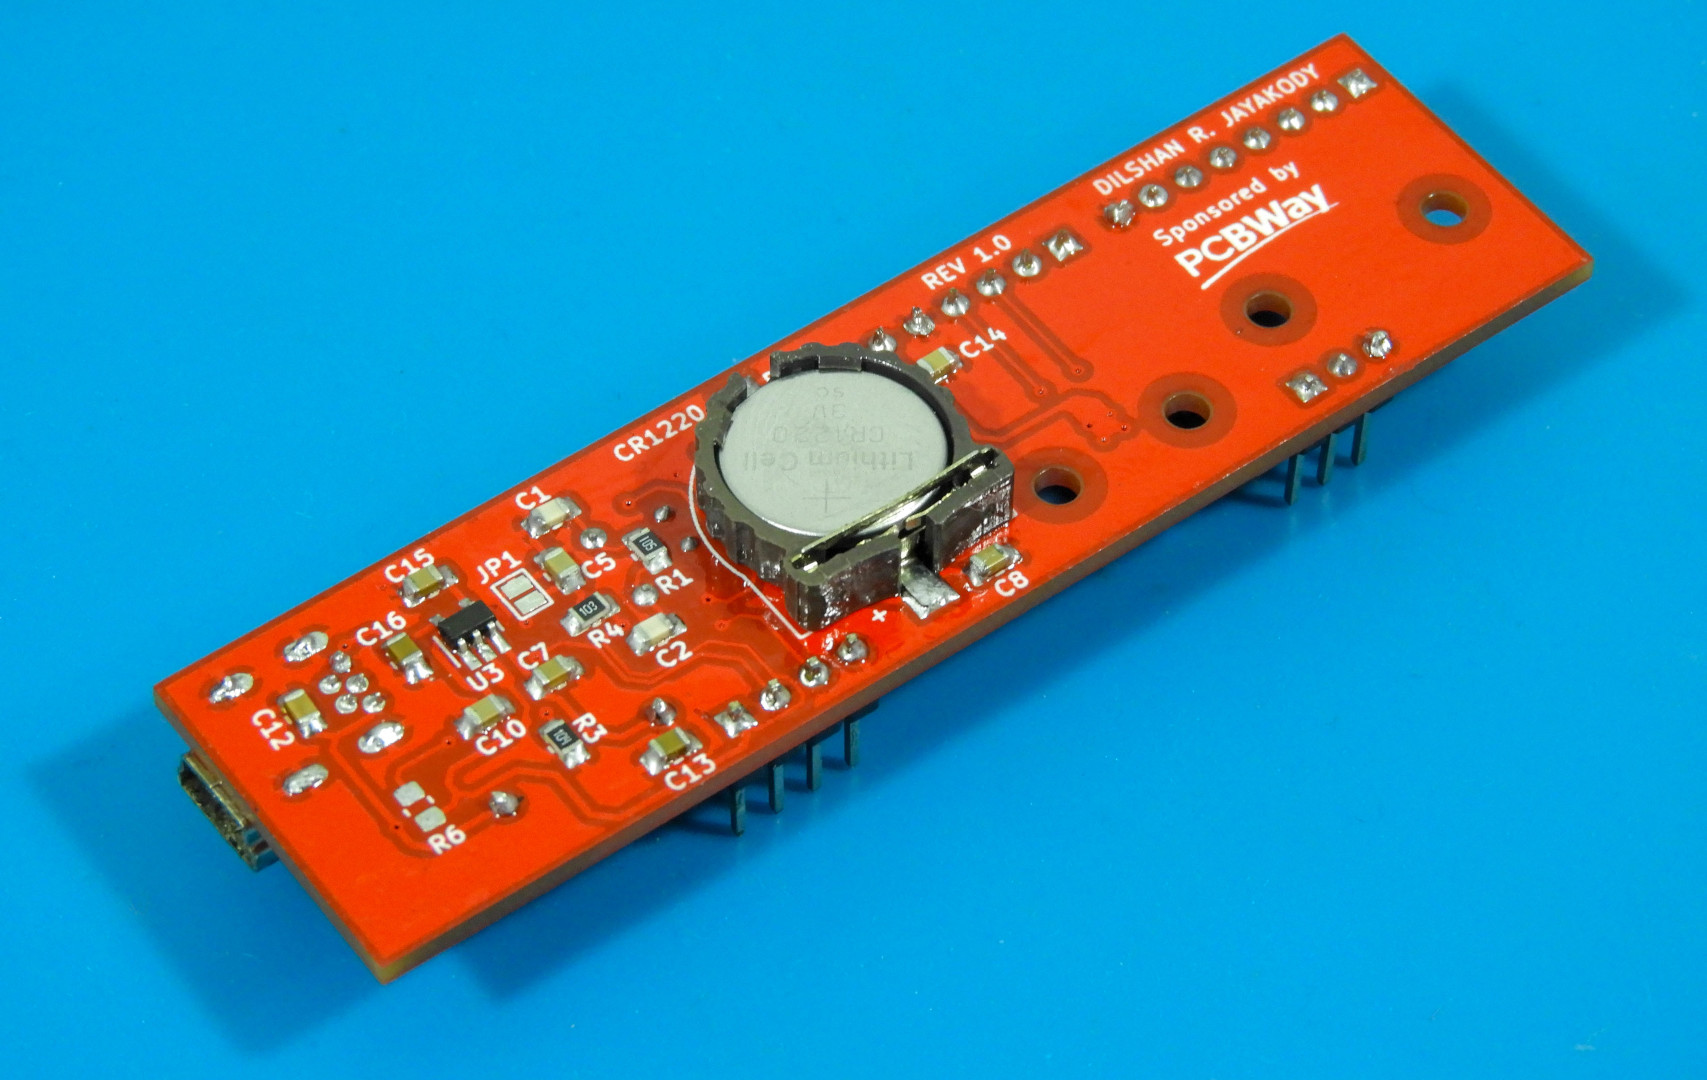 Bottom side of the StarPointer sensor kit.